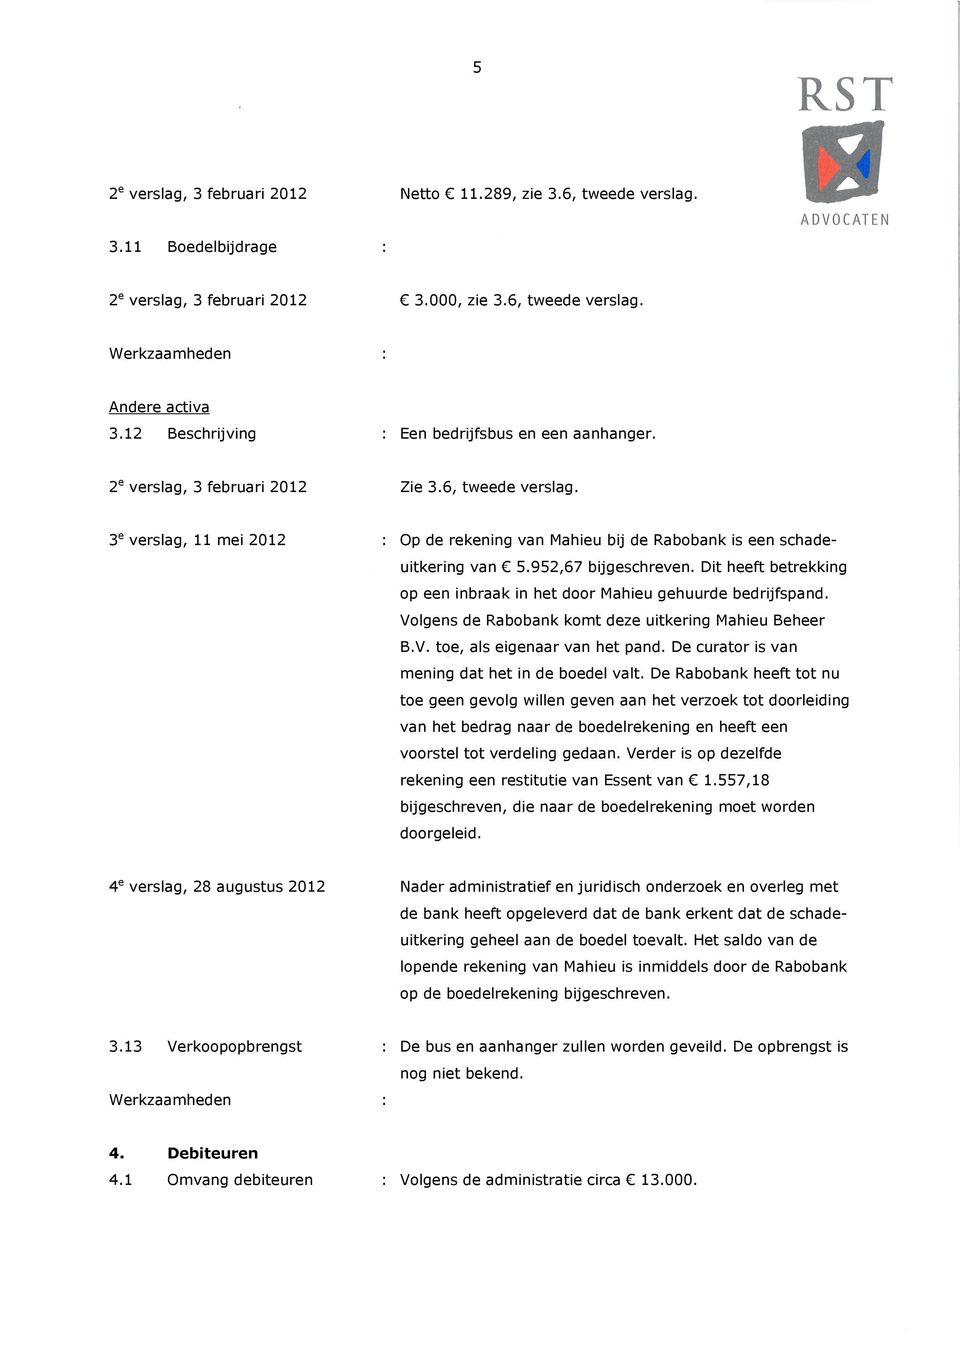 3 e verslag, 11 mei 2012 : Op de rekening van Mahieu bij de Rabobank is een schadeuitkering van 5.952,67 bijgeschreven. Dit heeft betrekking op een inbraak in het door Mahieu gehuurde bedrijfspand.